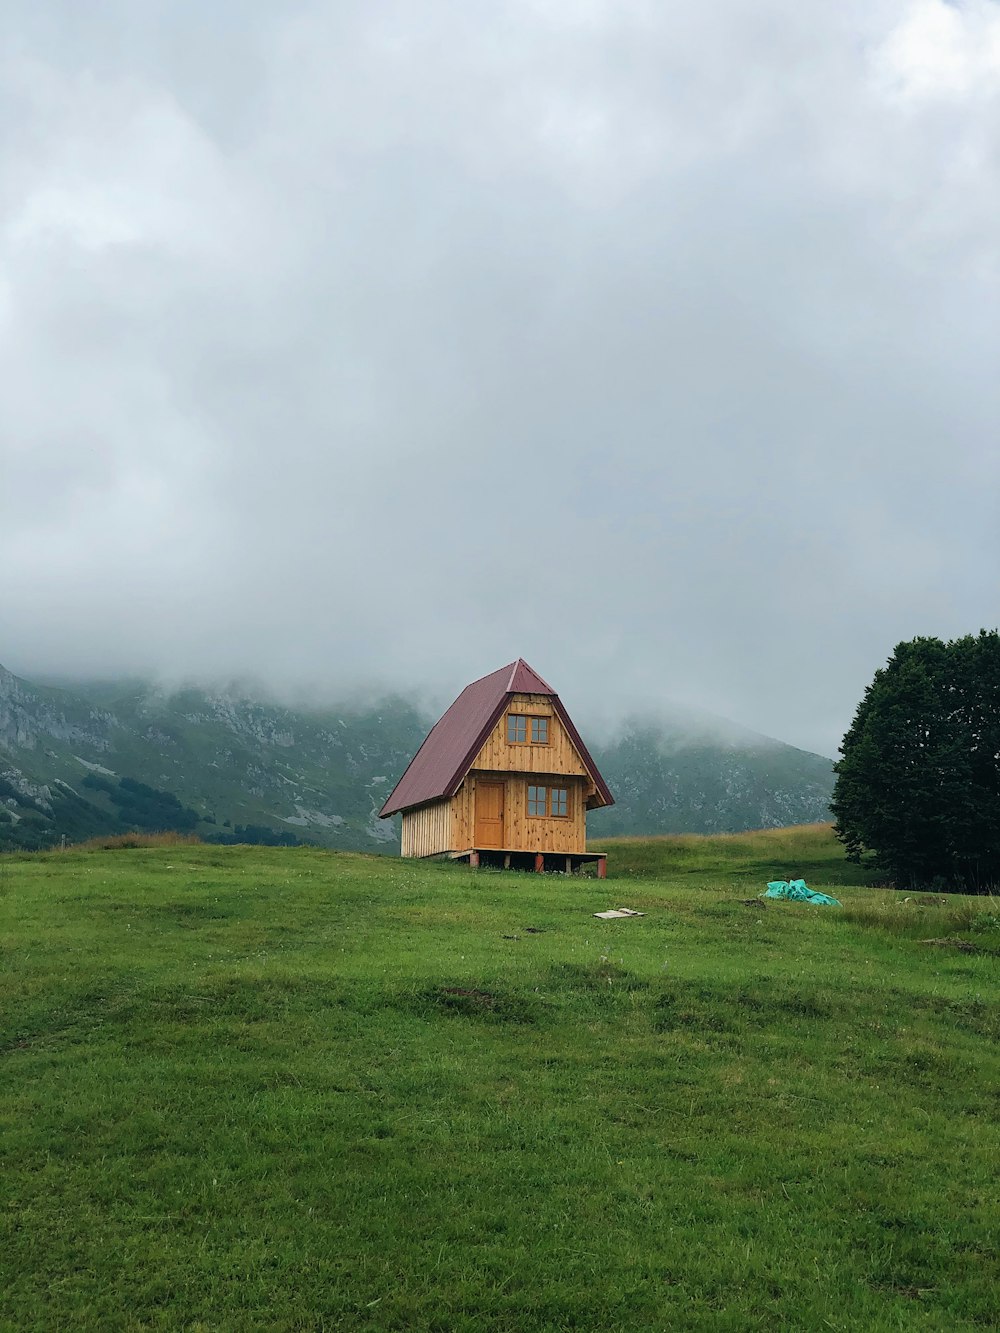 Maison en bois brun sur un champ d’herbe verte près de montagnes vertes sous des nuages blancs pendant la journée